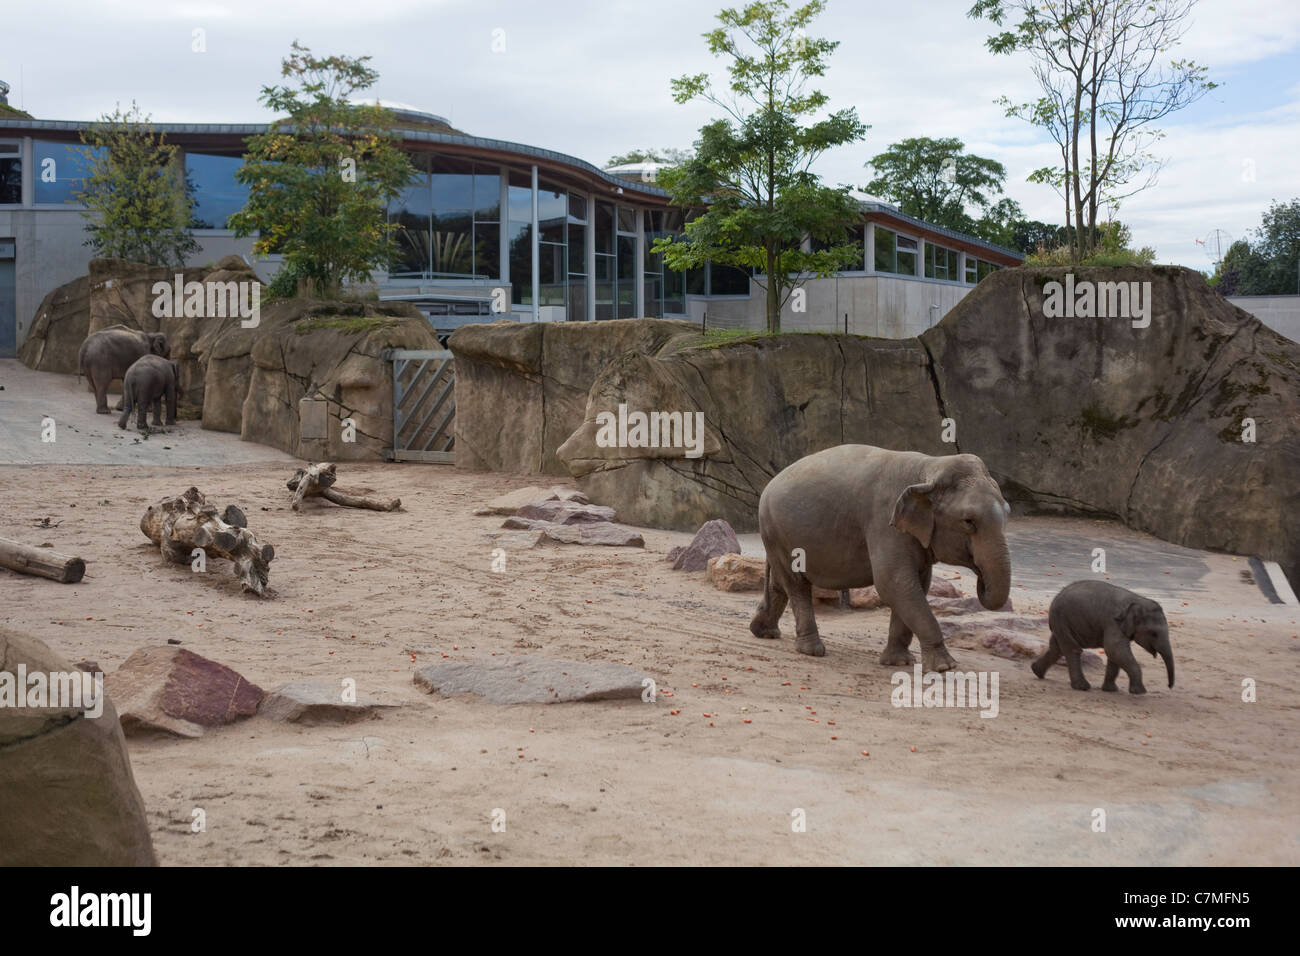 Elefanti asiatici (Elephas maximus). Casa e enclosure paesaggistici. O Colonia Koln Zoo, Germania. Foto Stock